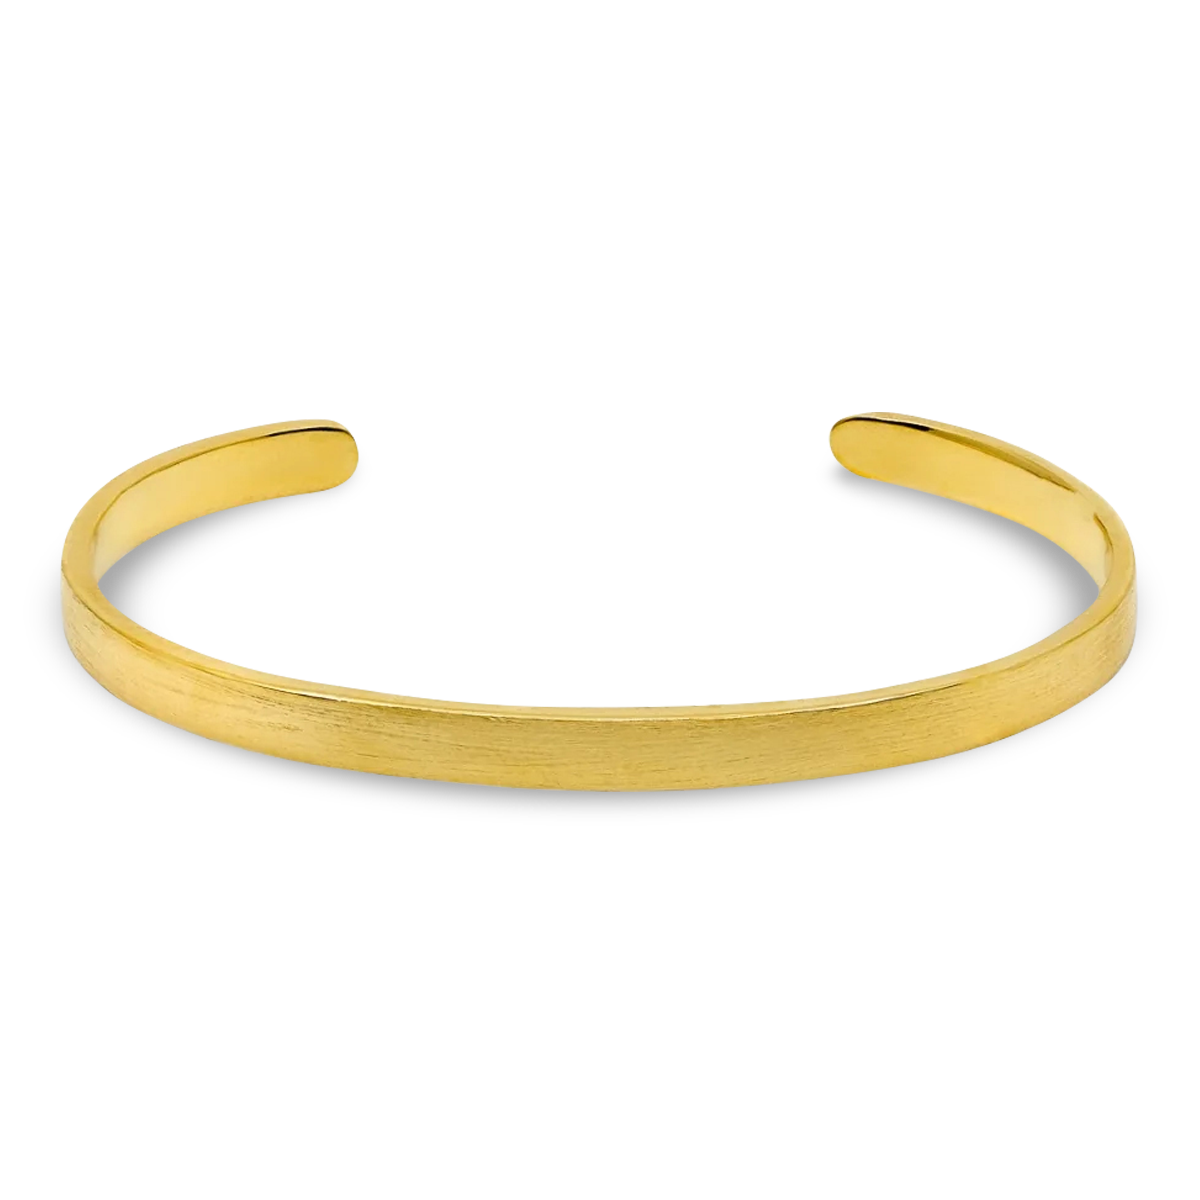 Gold Cuff Bracelets for Men for sale | eBay